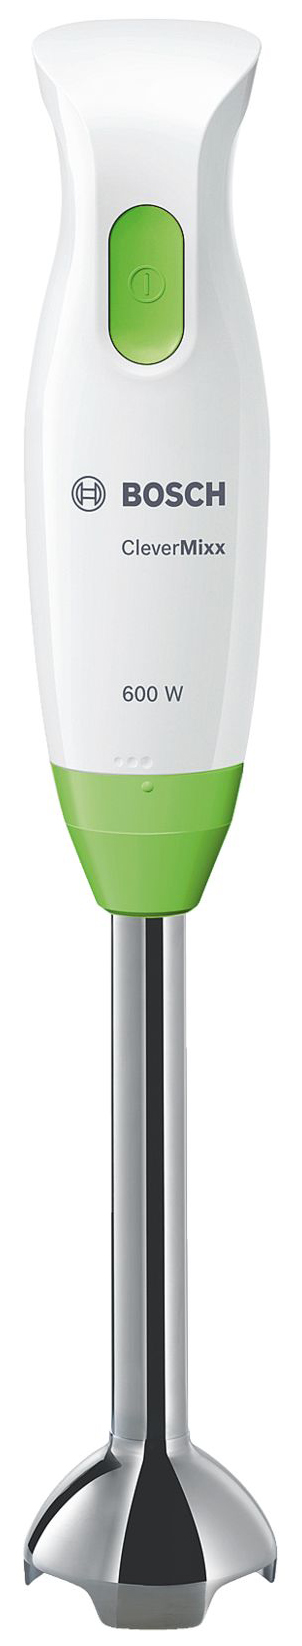 Погружной блендер Bosch MSM2623G White/Green погружной блендер bosch msm2623g white green